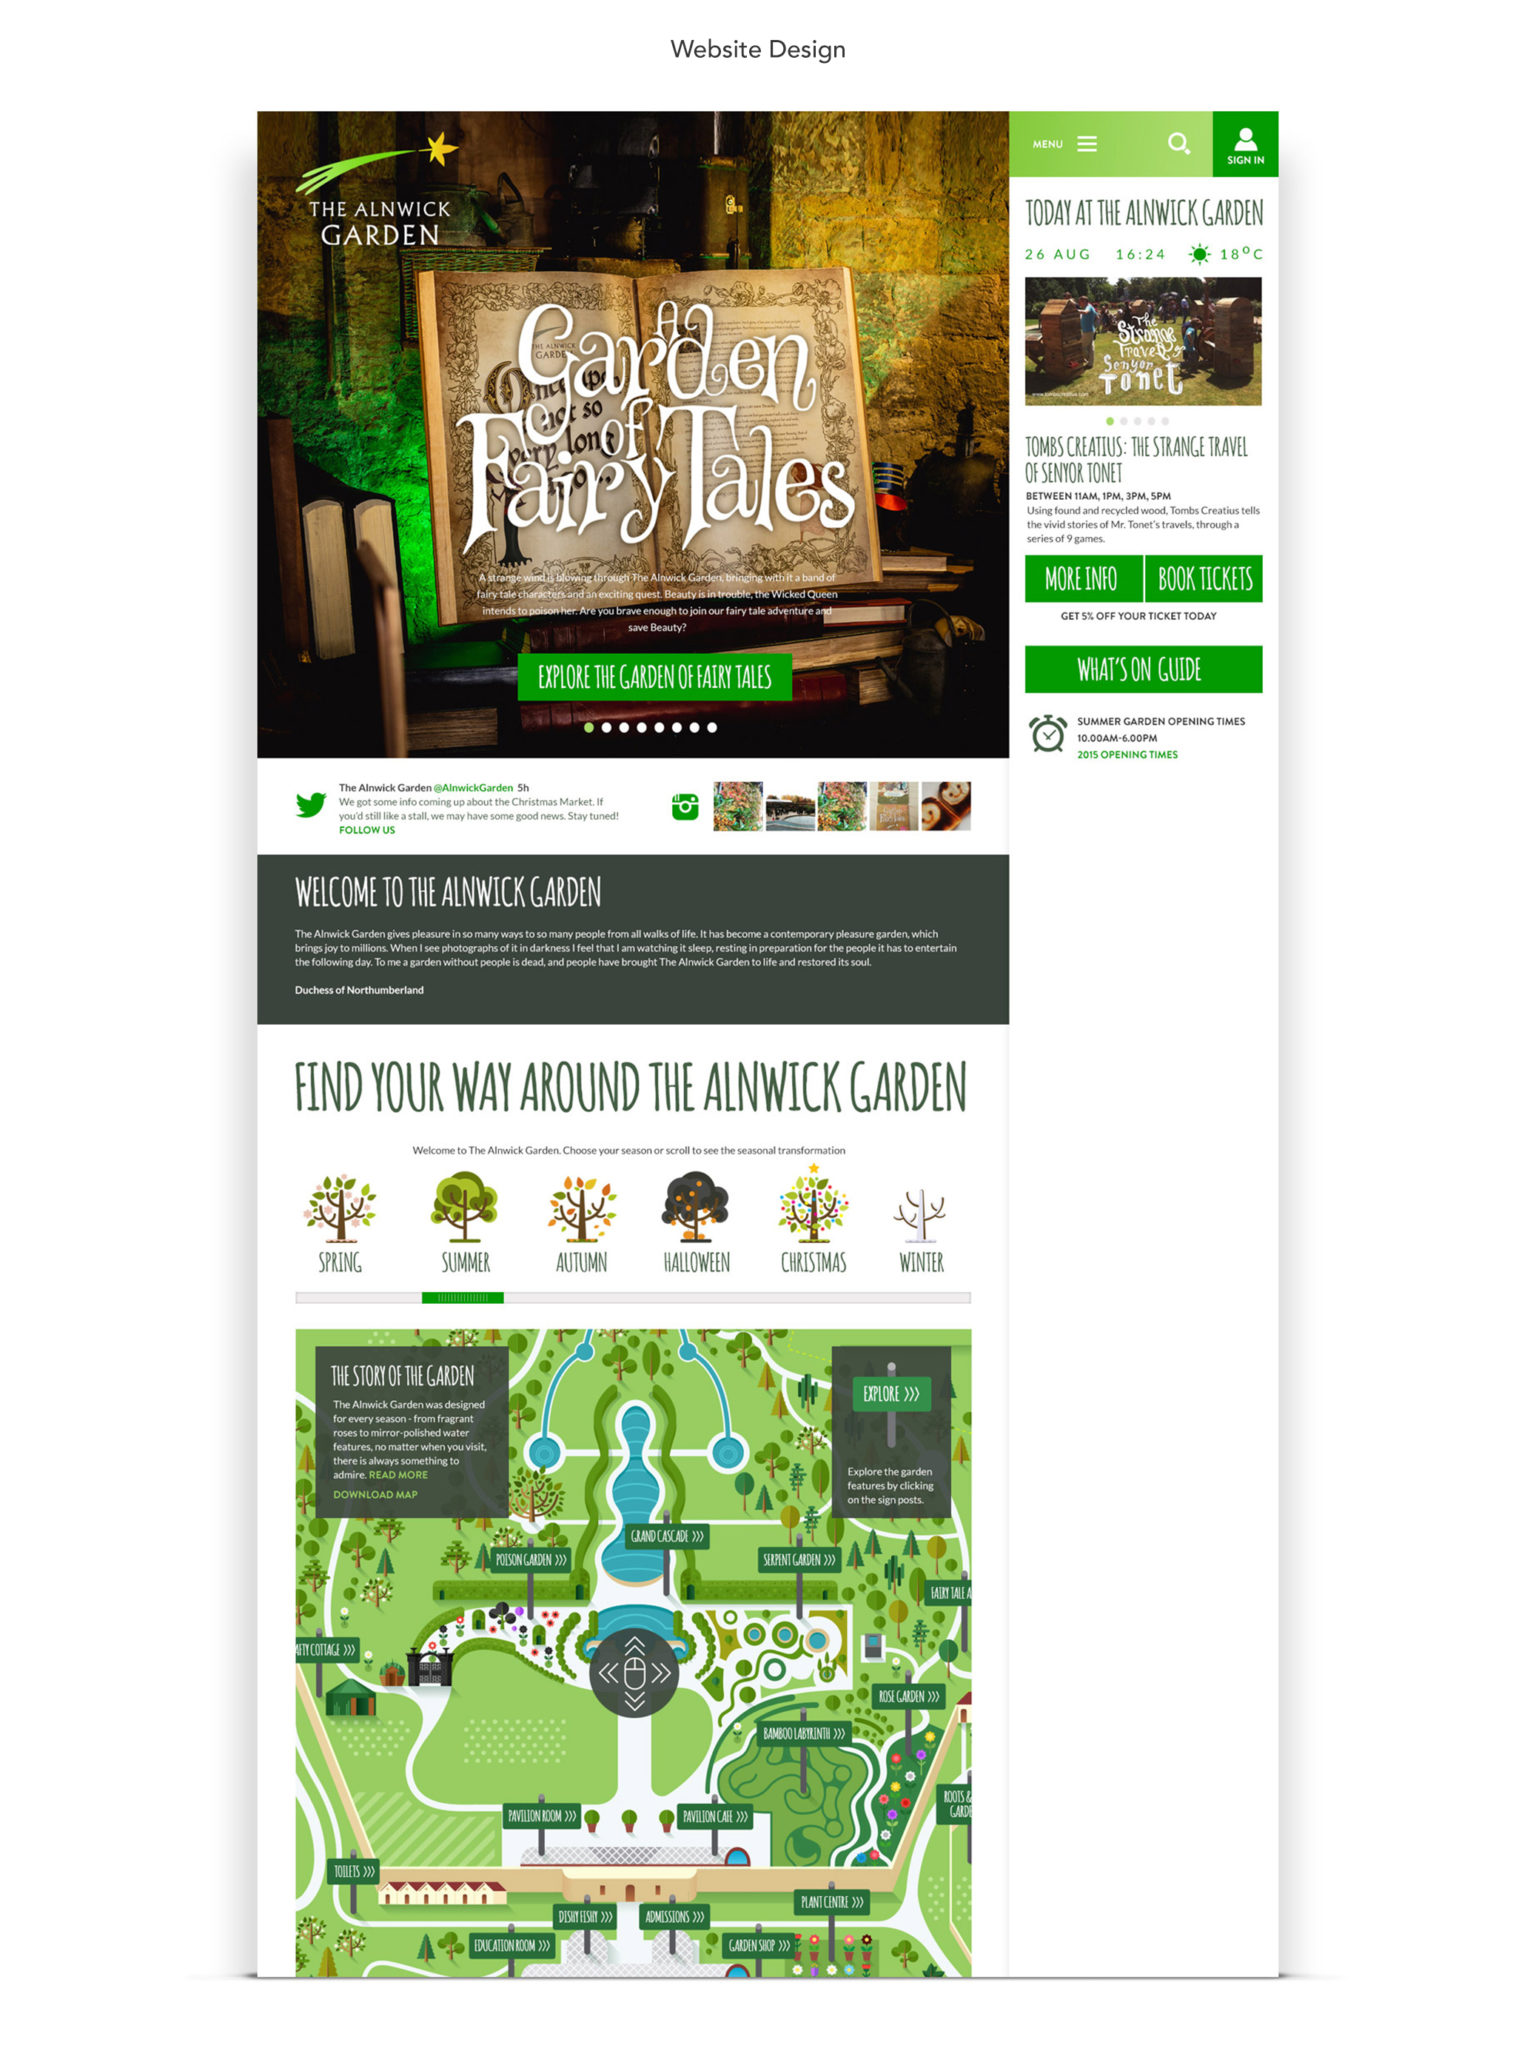 The Alnwick Garden Website